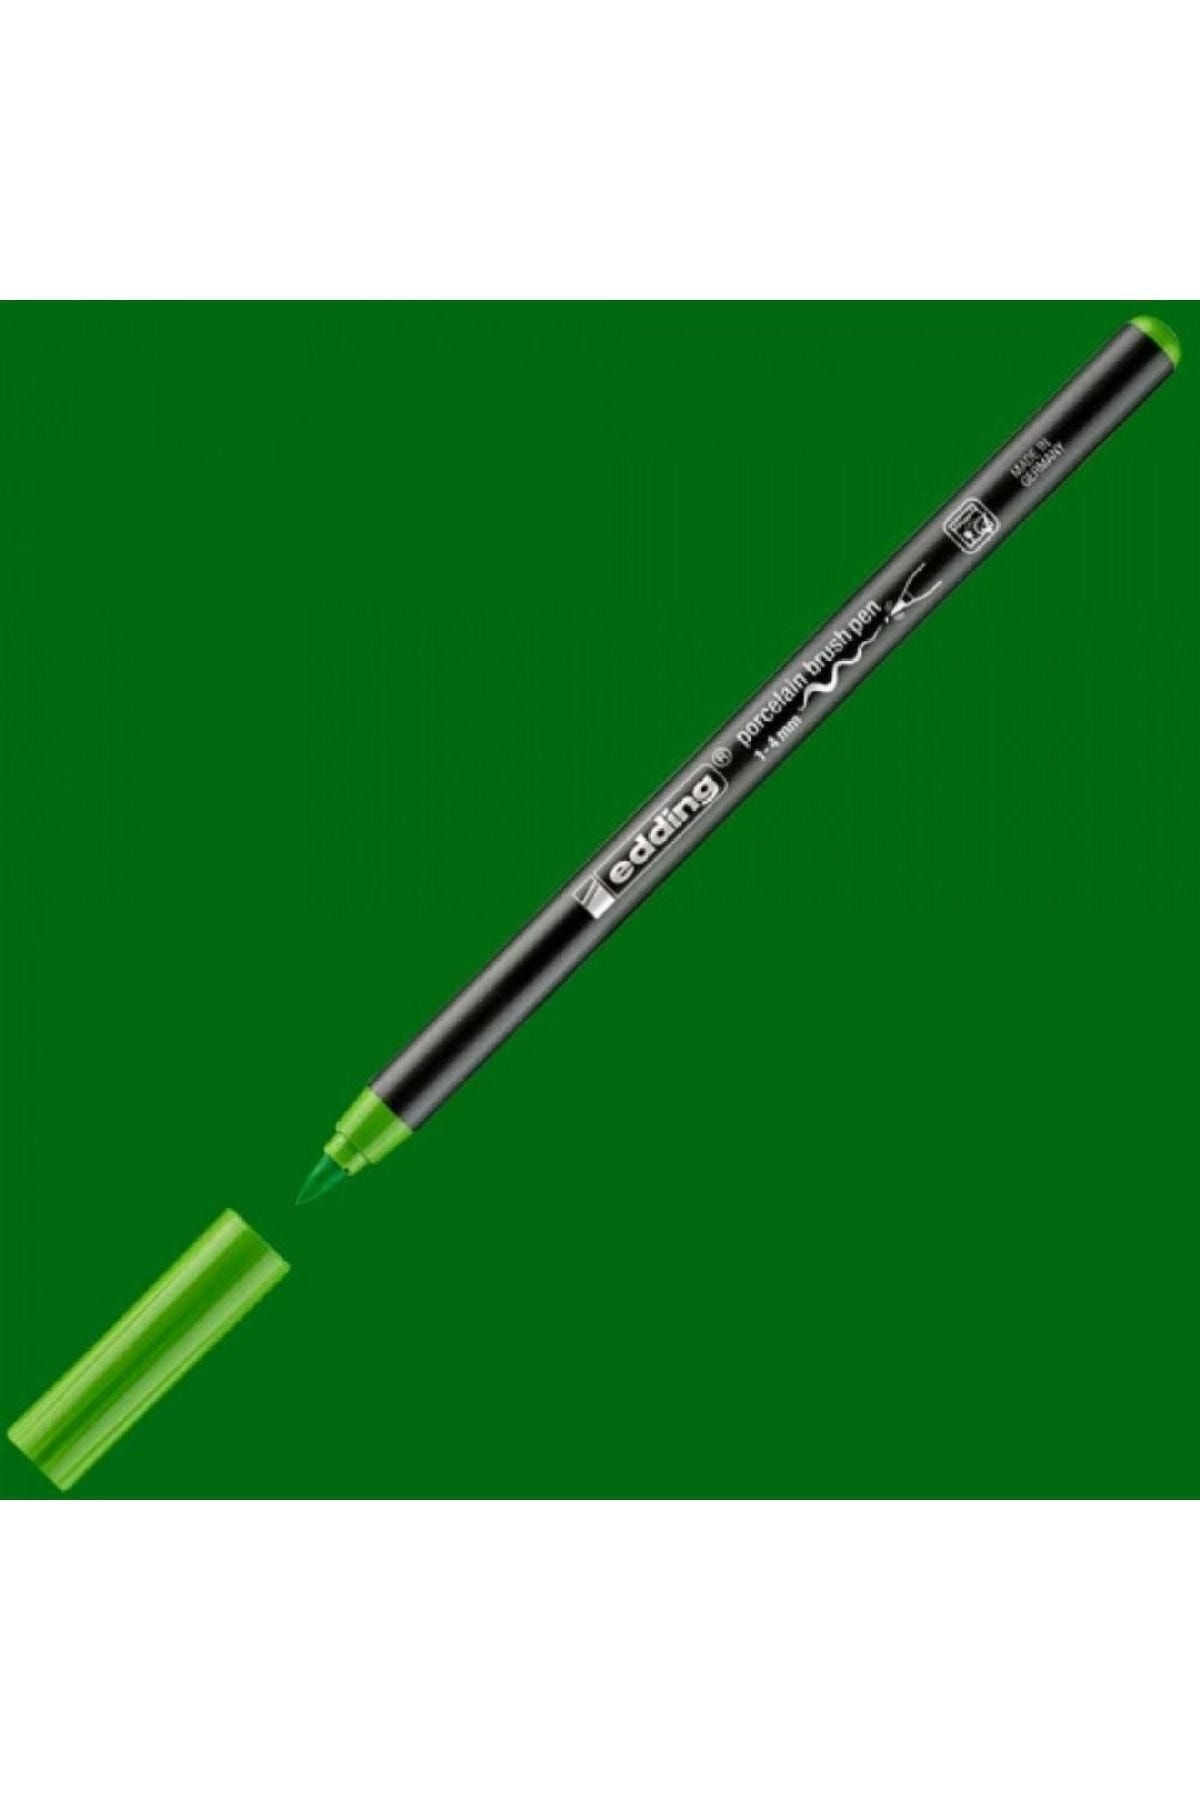 Edding Porselen Kalemi 4200 1-4mm Açık Yeşil 11